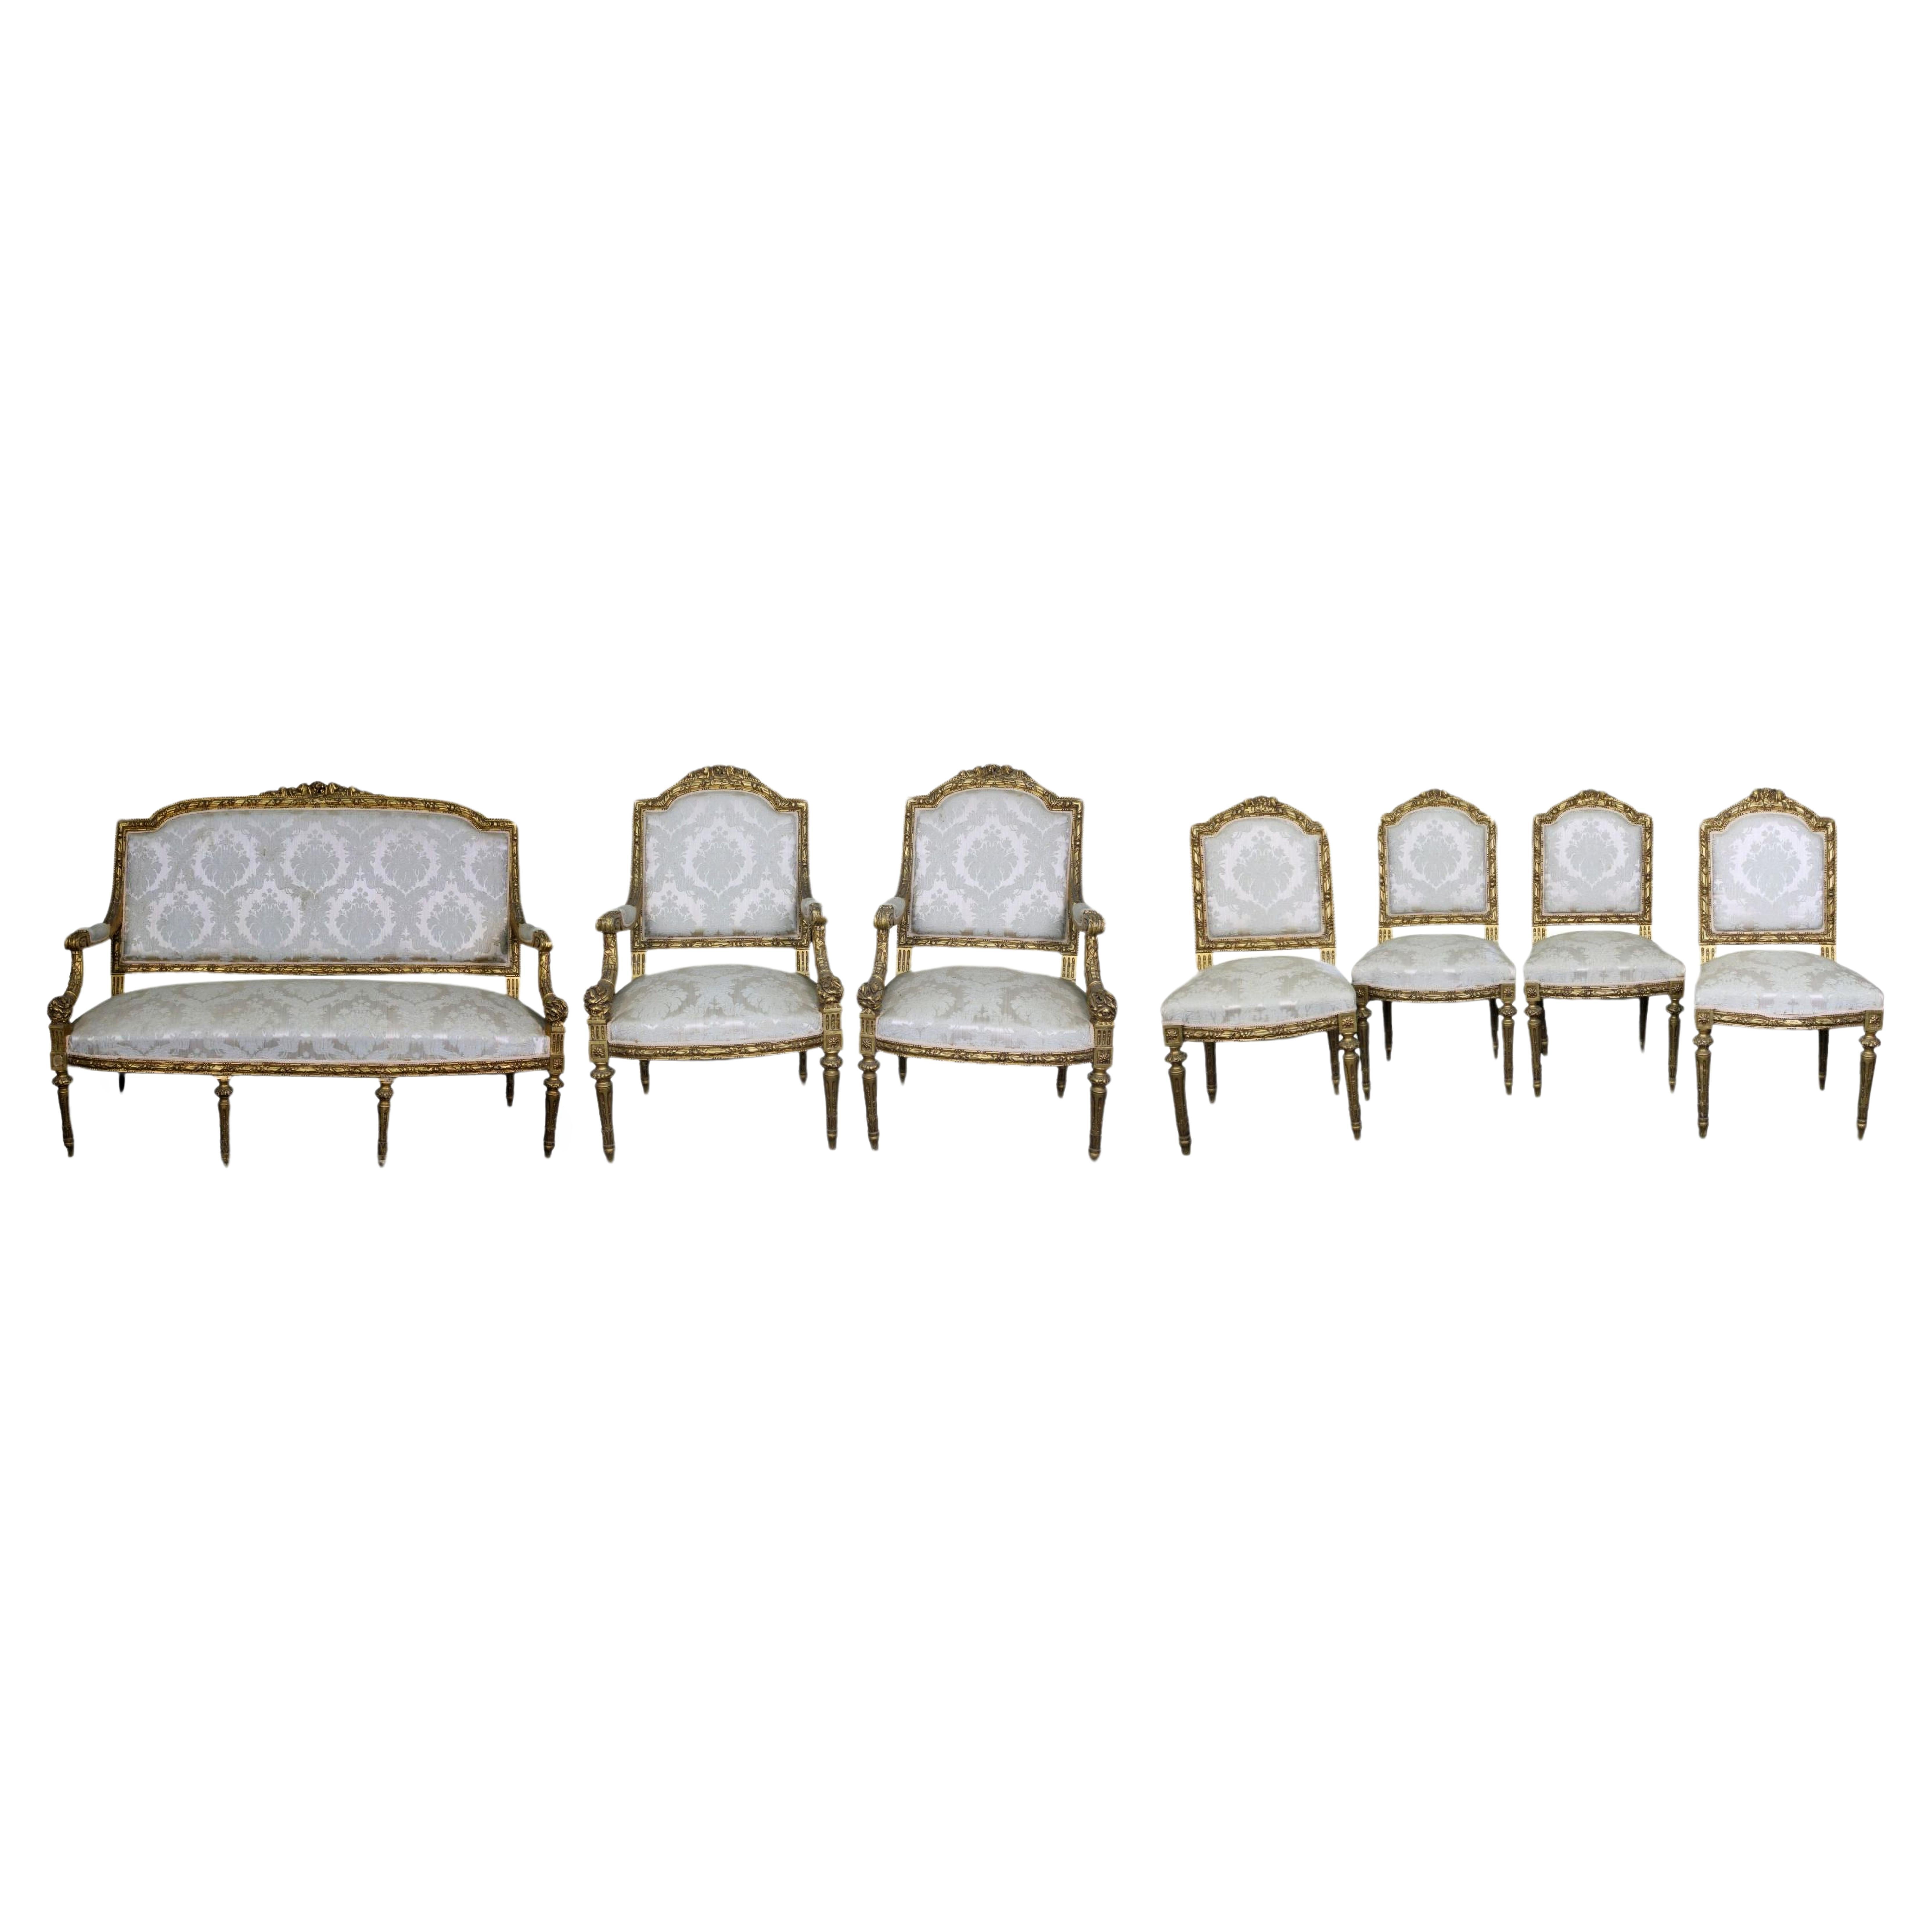 Bedeutende Sofagarnitur, ein Paar Sessel und 4 Stühle im Louis XVI-Stil aus dem 19.

SOFA
aus reich geschnitztem und vergoldetem Holz im Louis-XVI-Stil, Frankreich, Ende 19. Jahrhundert, H 125 x 160 x 75 cm

PAAR SESSEL
aus reich geschnitztem und